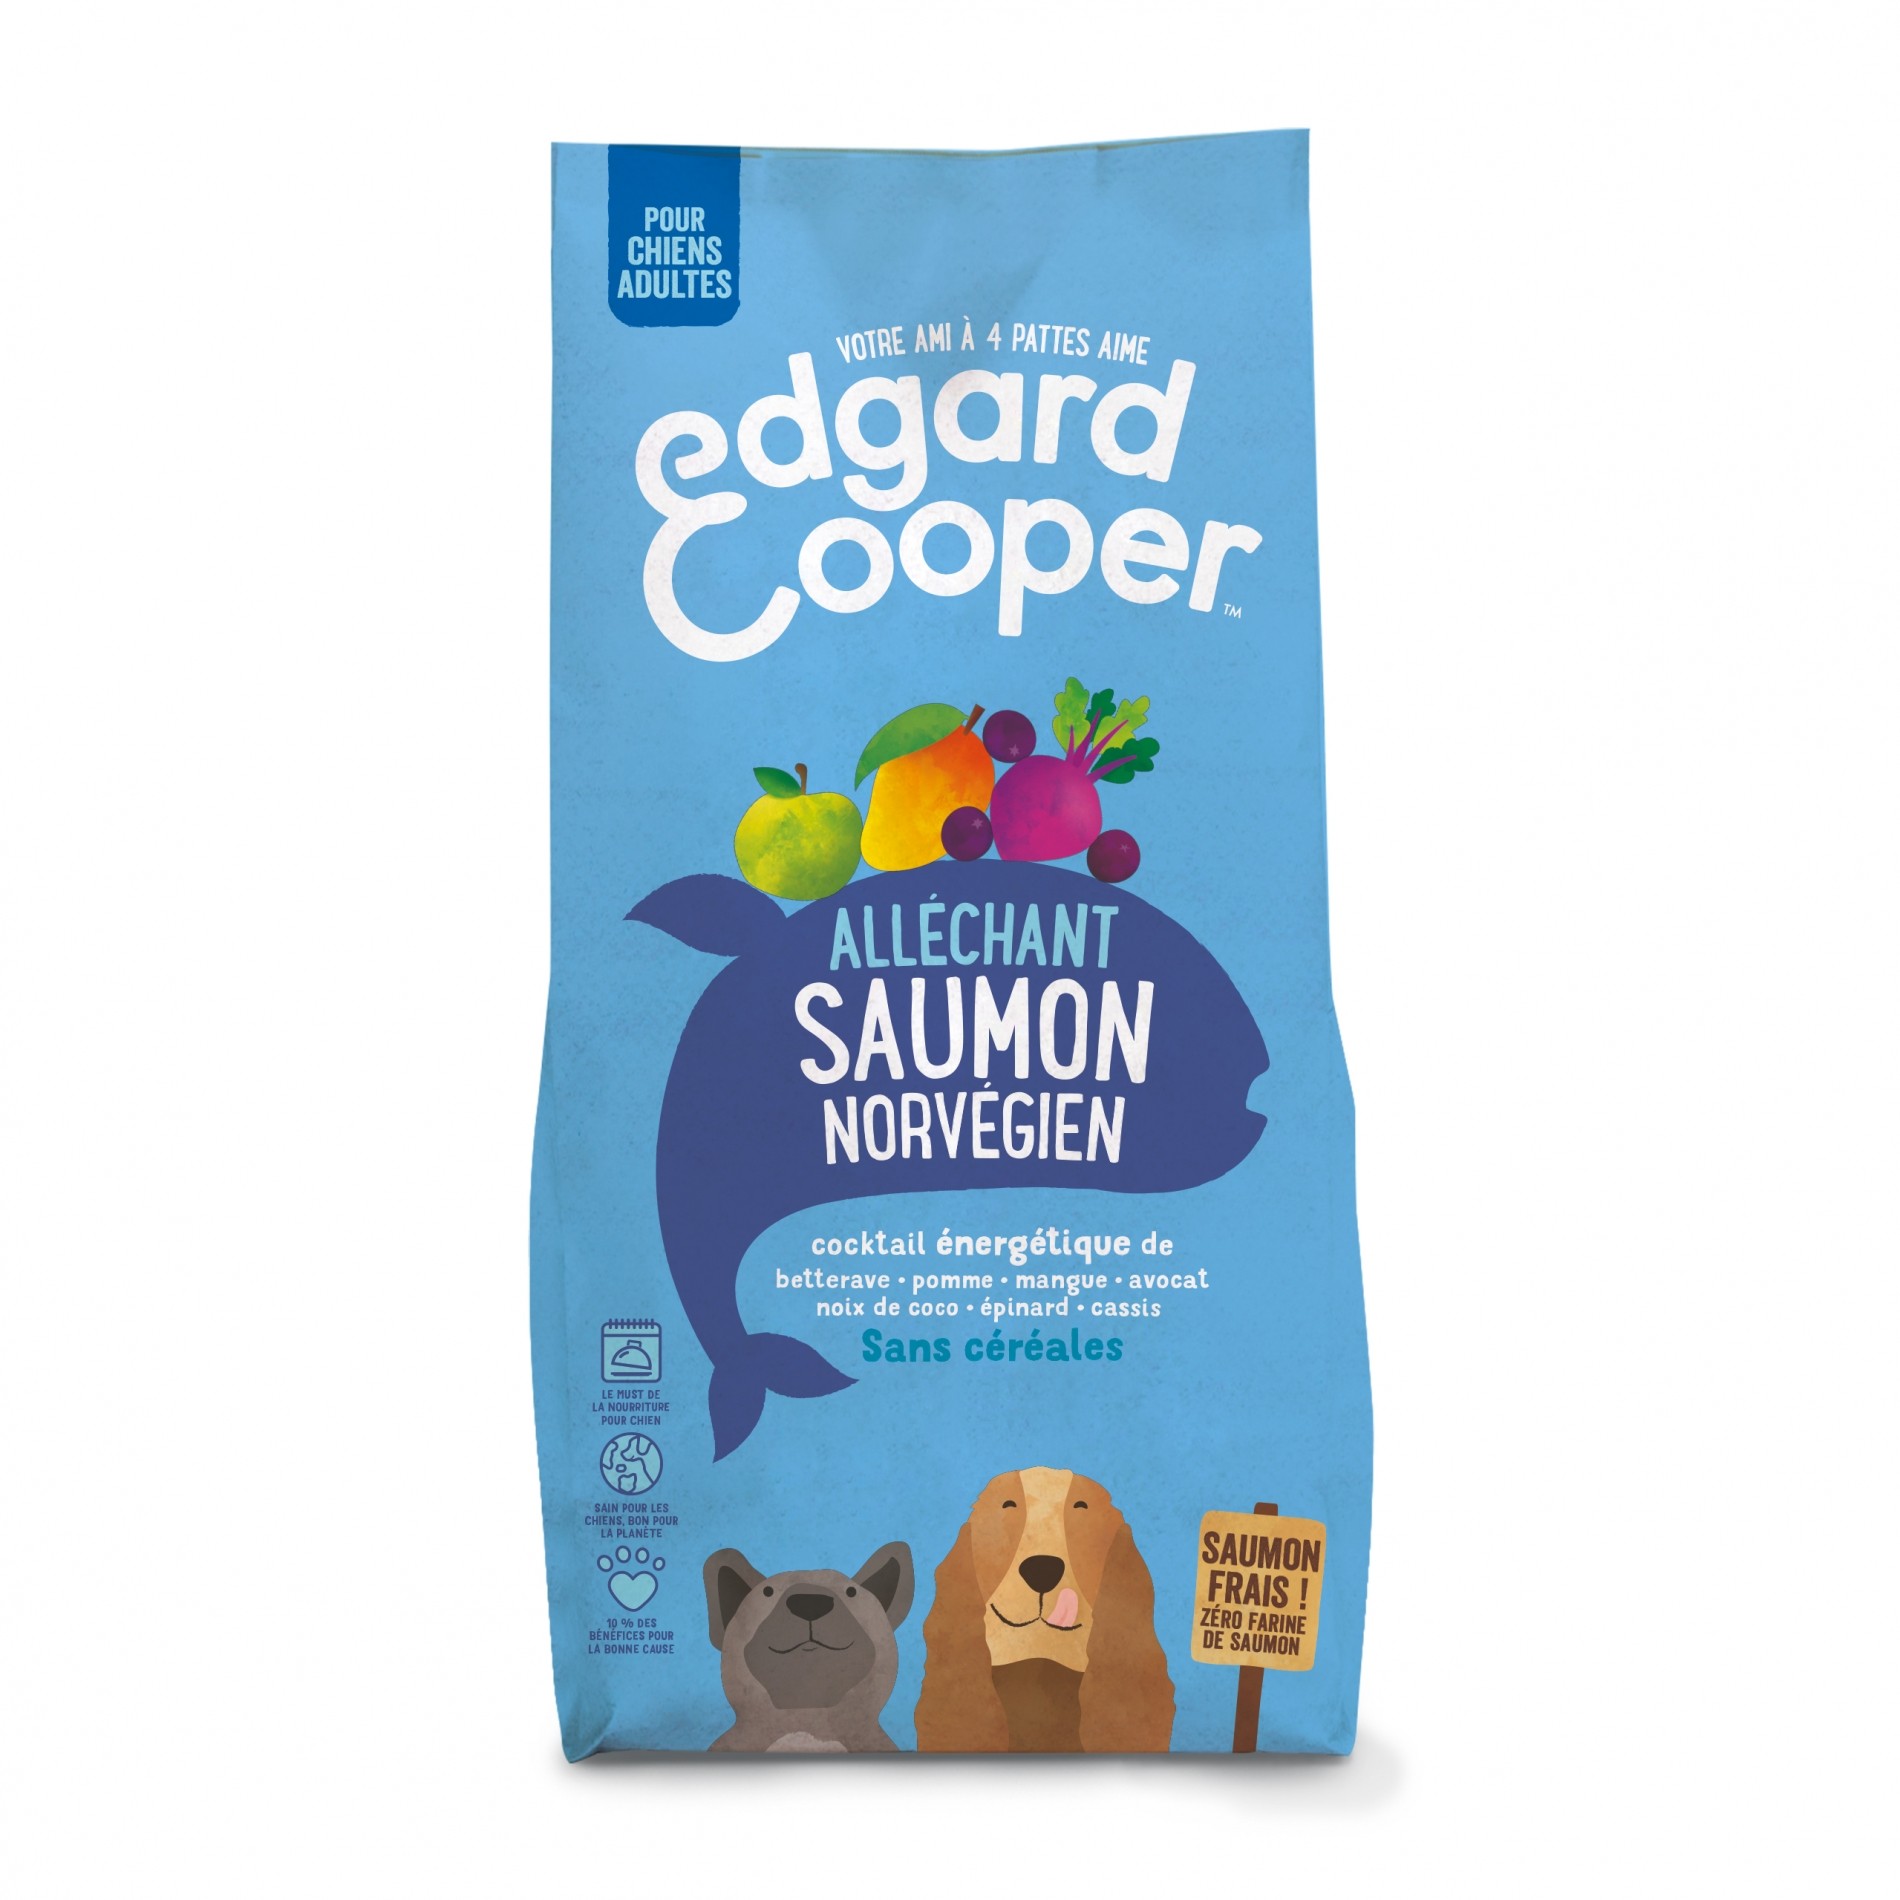 edgard-cooper-allechant-saumon-norvegien-pour-chien-adulte-saumon-norvegien-frais-sans-cereales